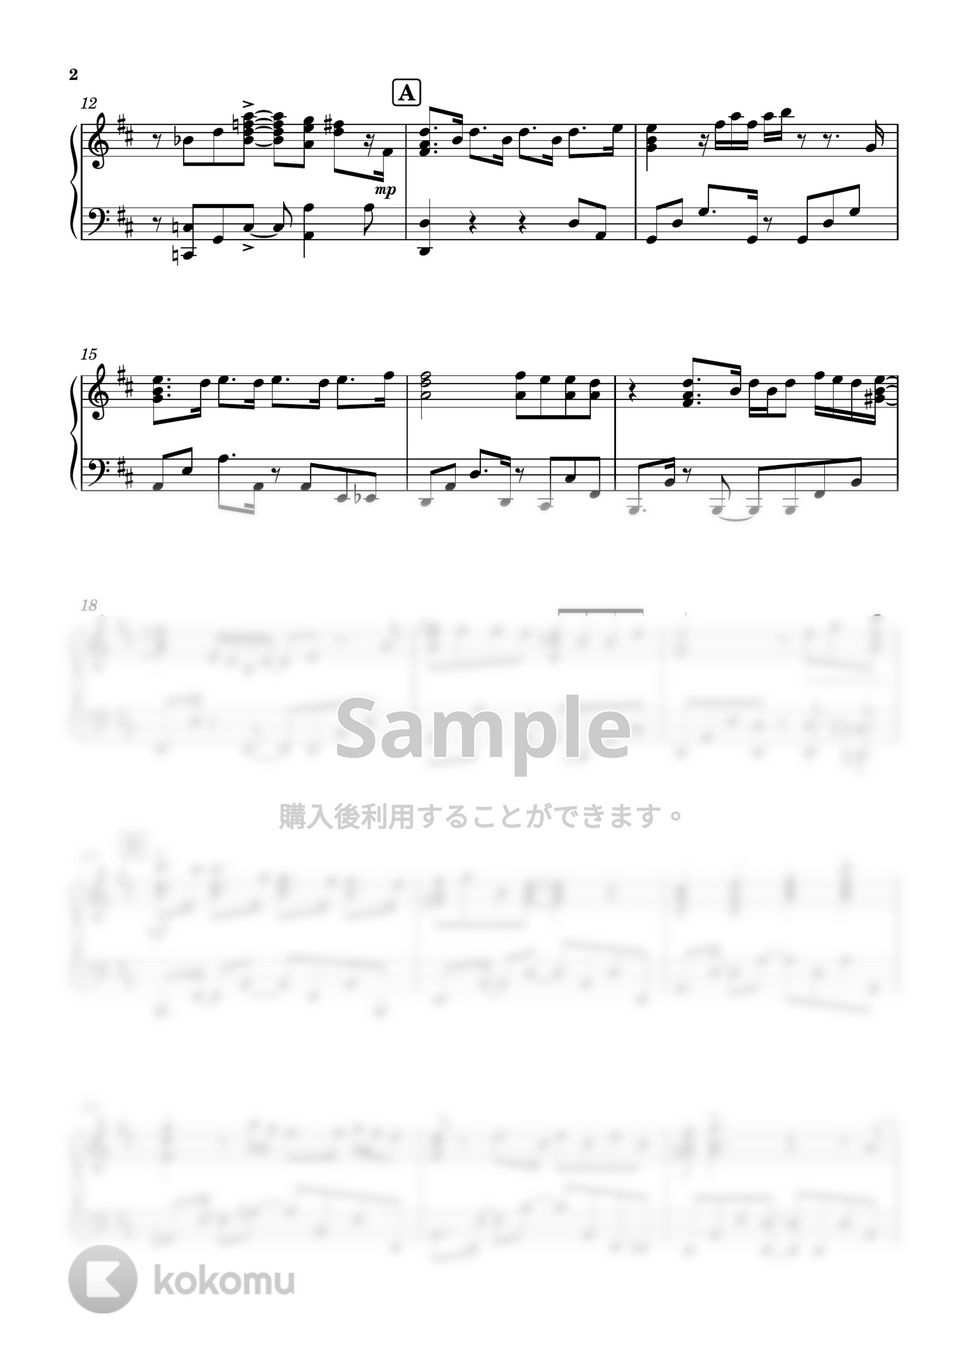 Mrs. GREEN APPLE - ダンスホール (ピアノソロ / 上級) by SuperMomoFactory